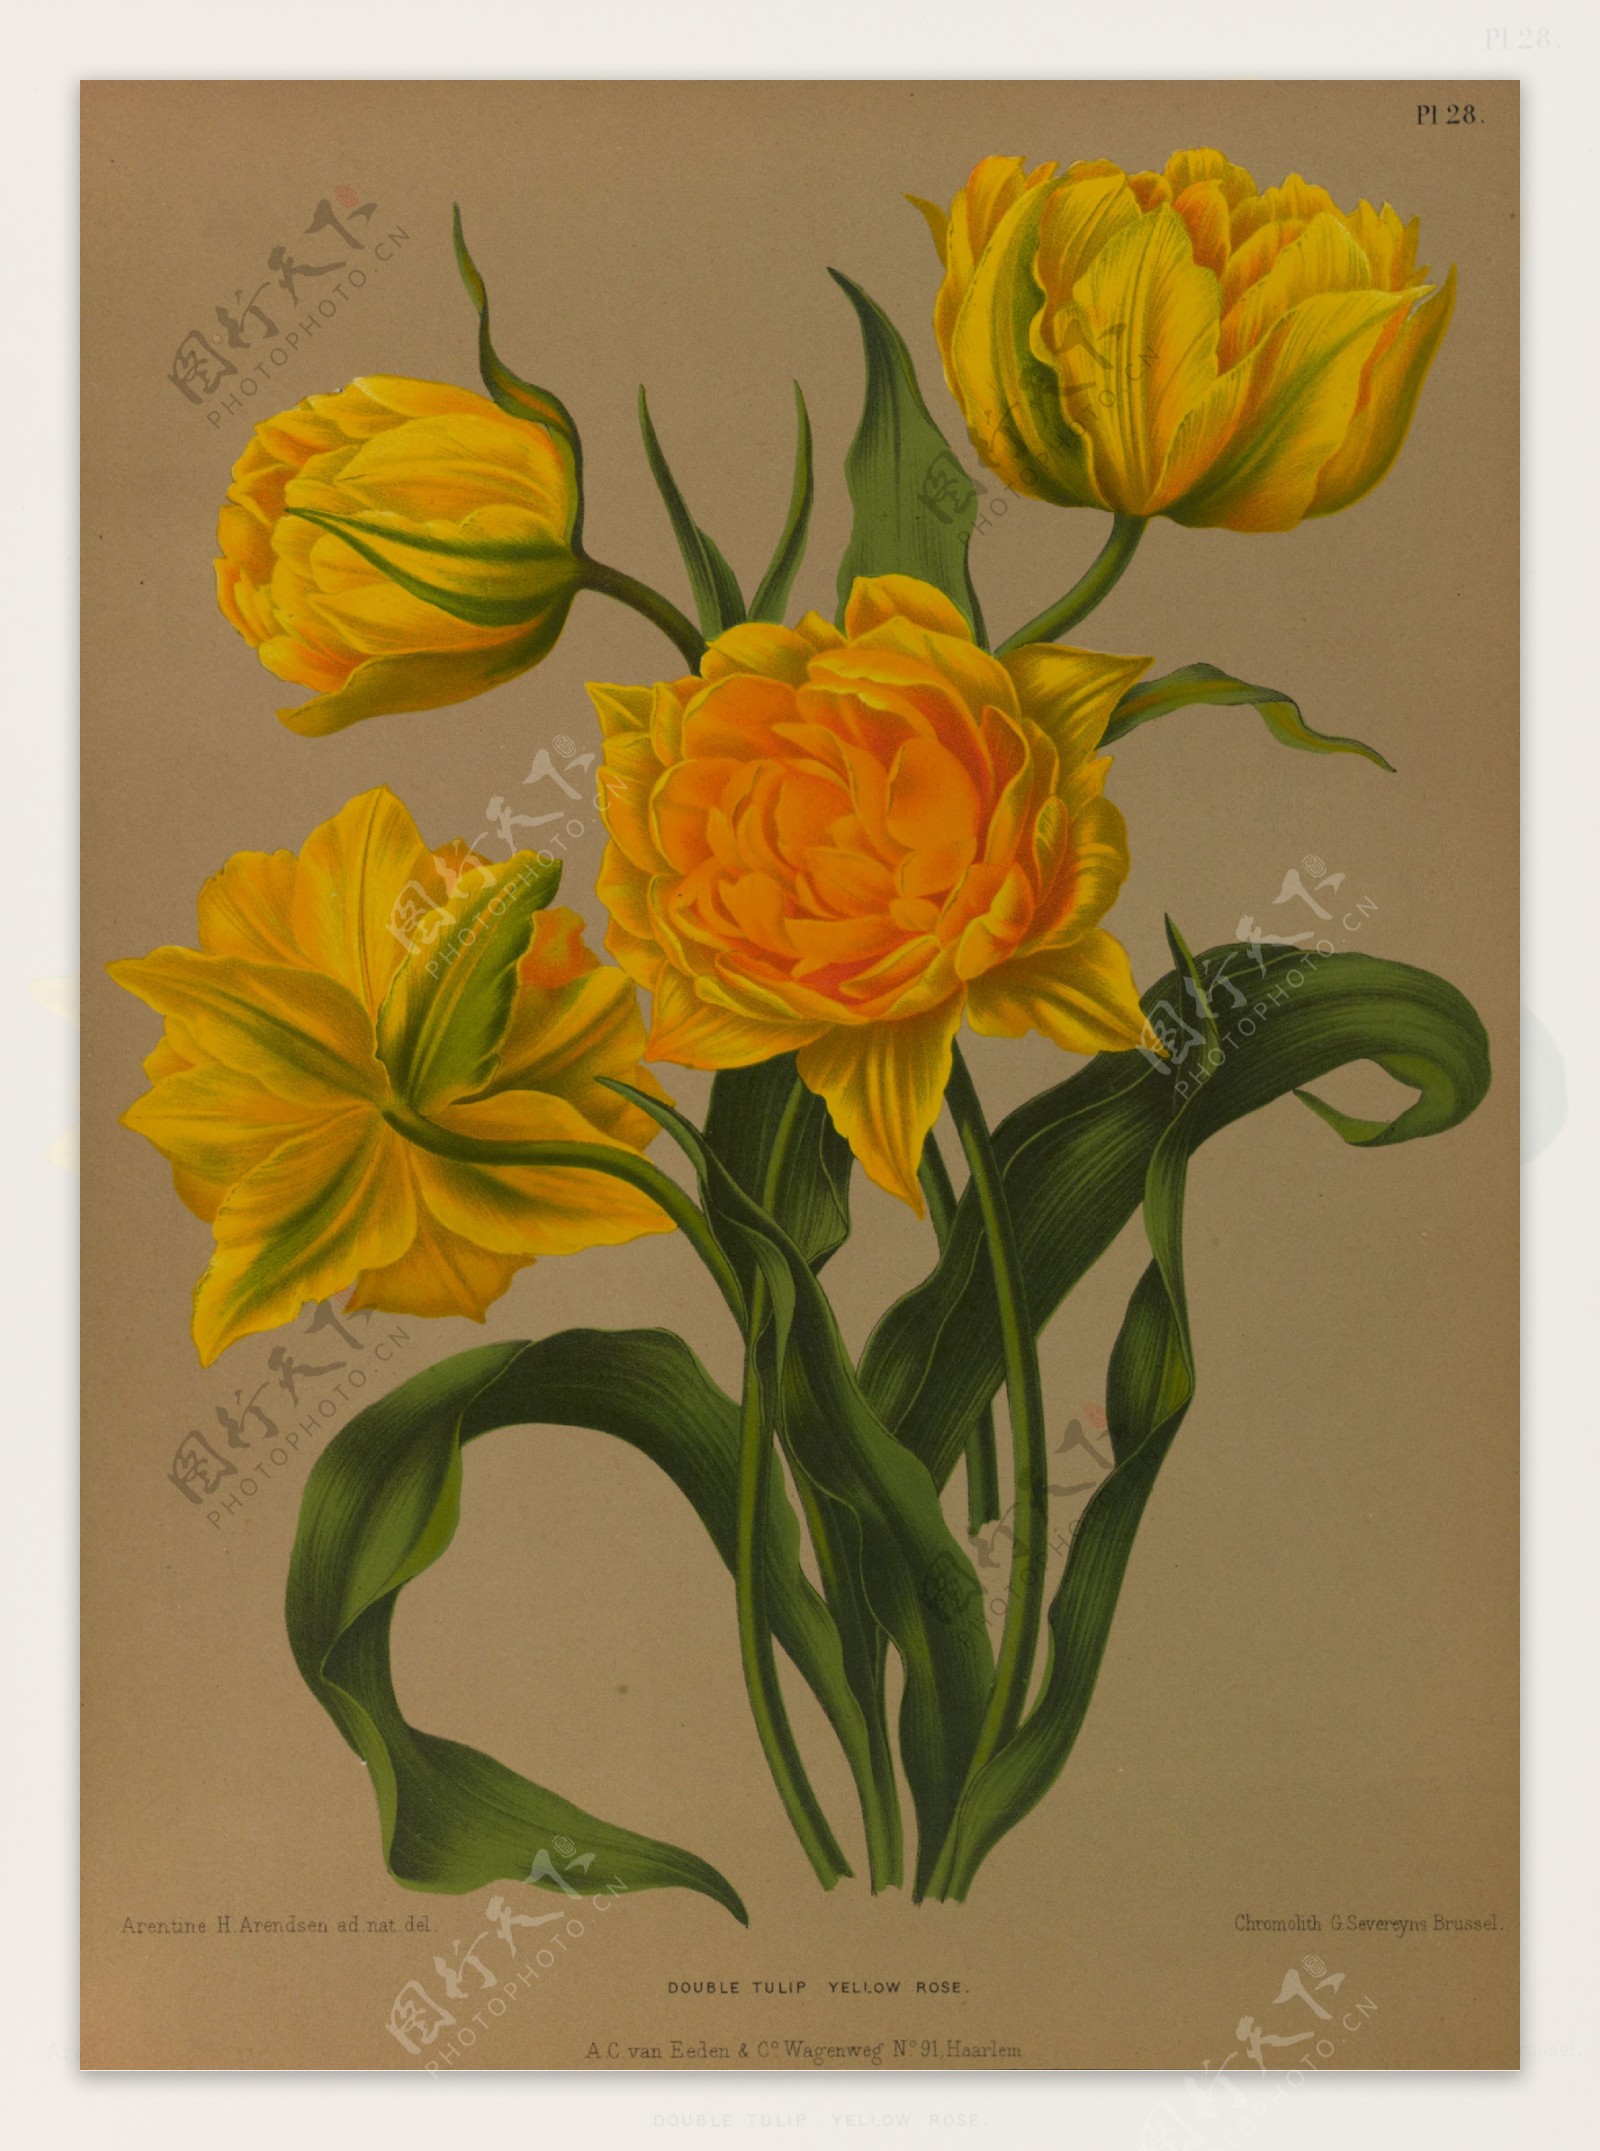 复古手绘黄色郁金香图片